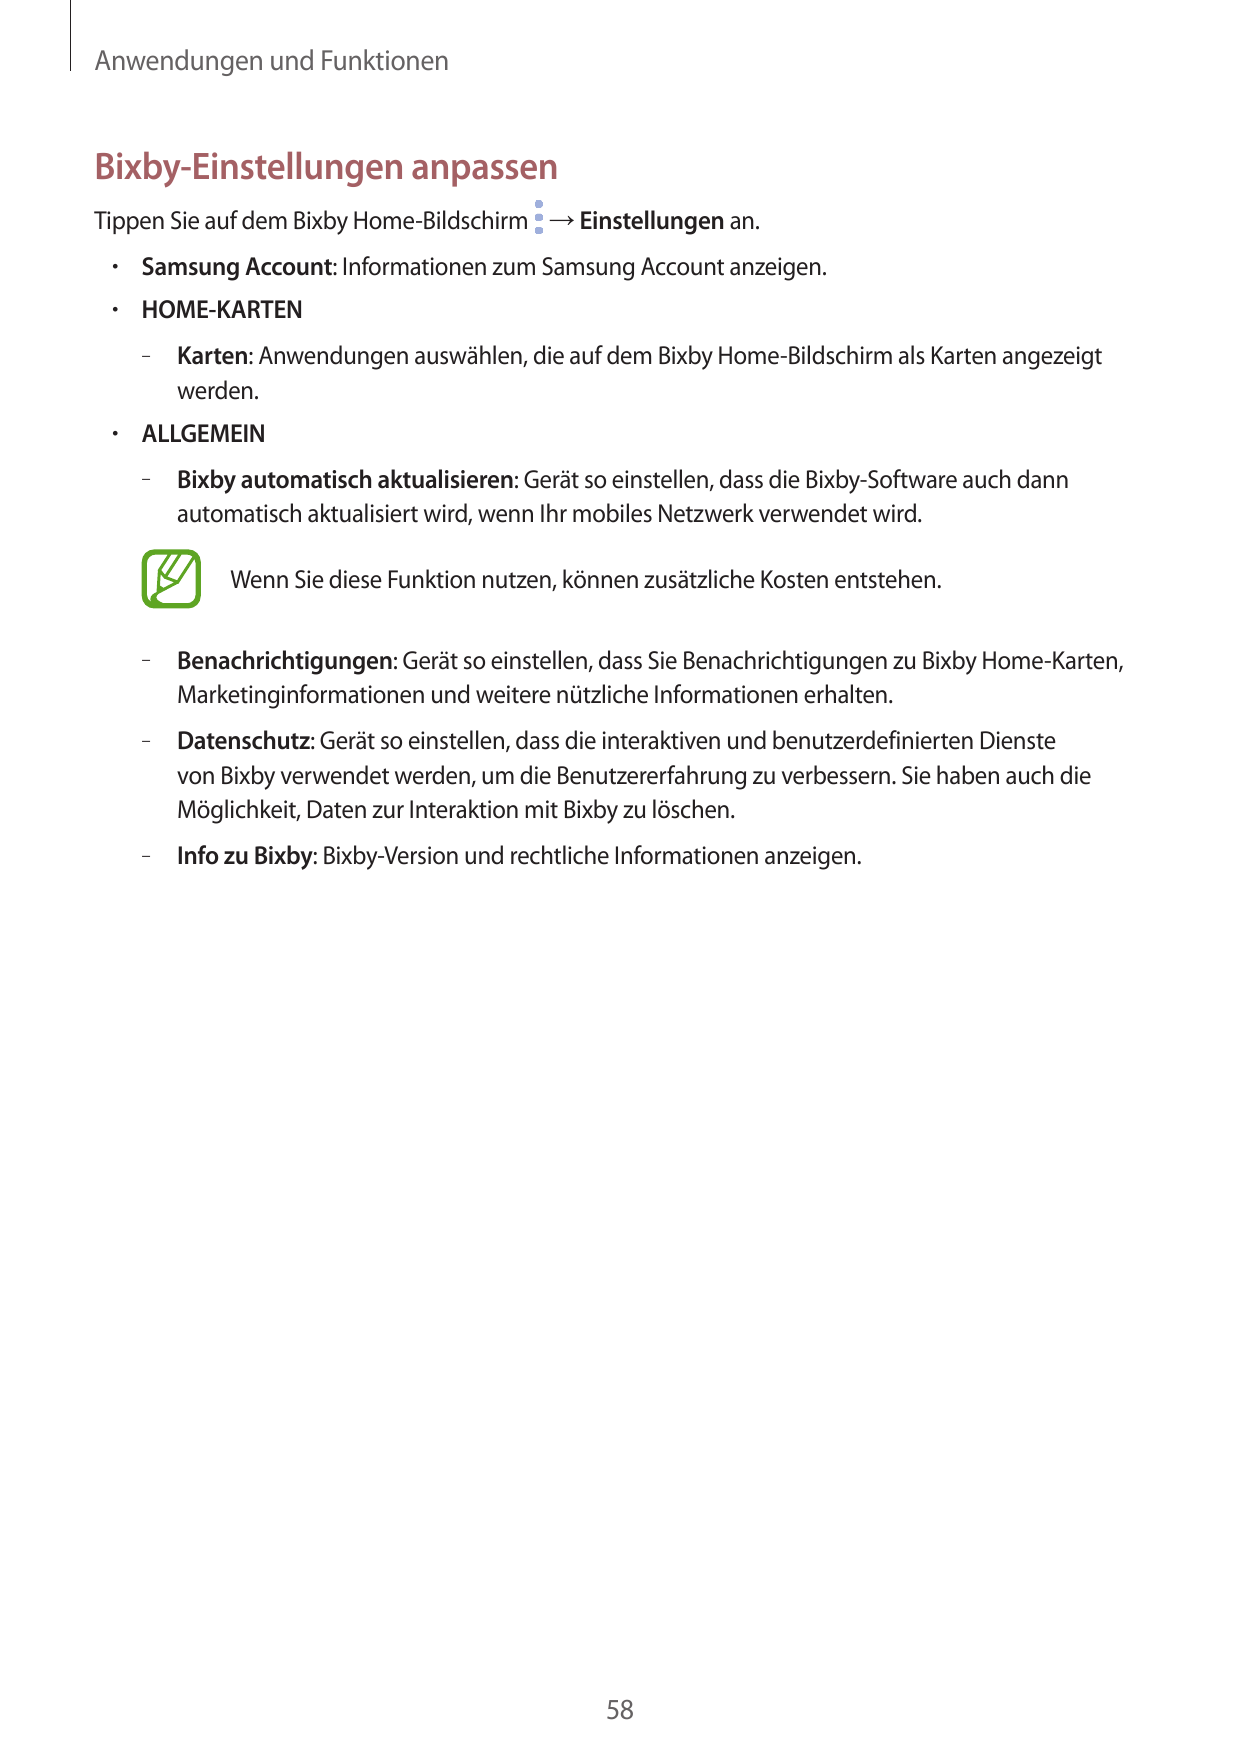 Anwendungen und FunktionenBixby-Einstellungen anpassenTippen Sie auf dem Bixby Home-Bildschirm → Einstellungen an.• Samsung Acco